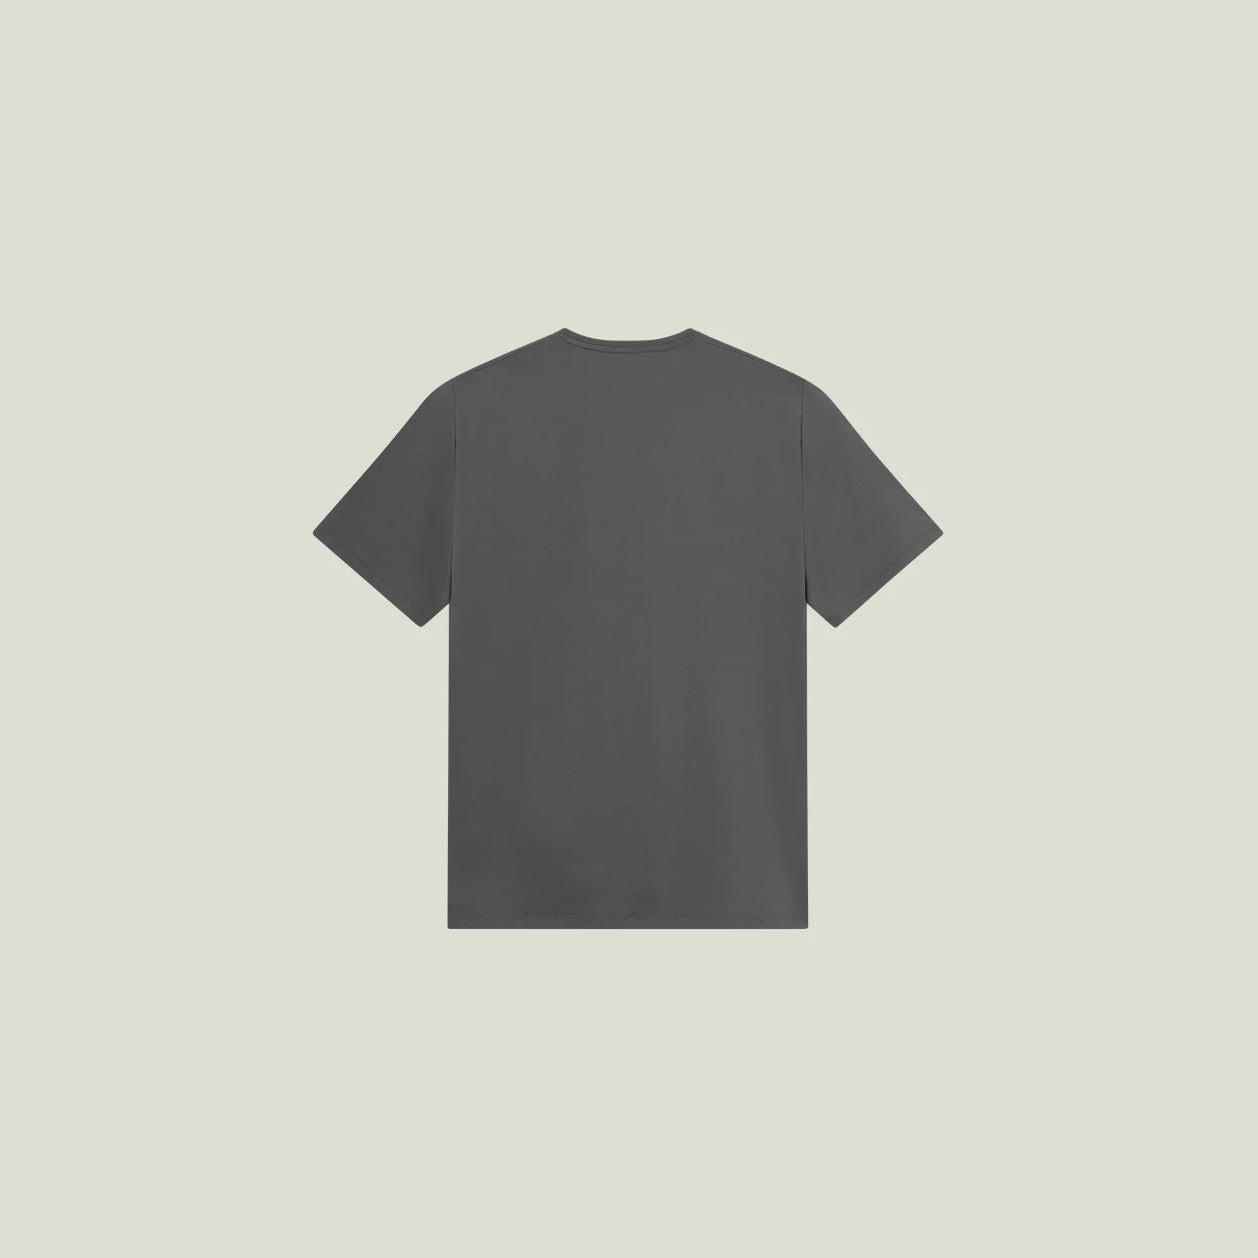 Cuera Oncourt Logo T-Shirt (Mørkegrå)